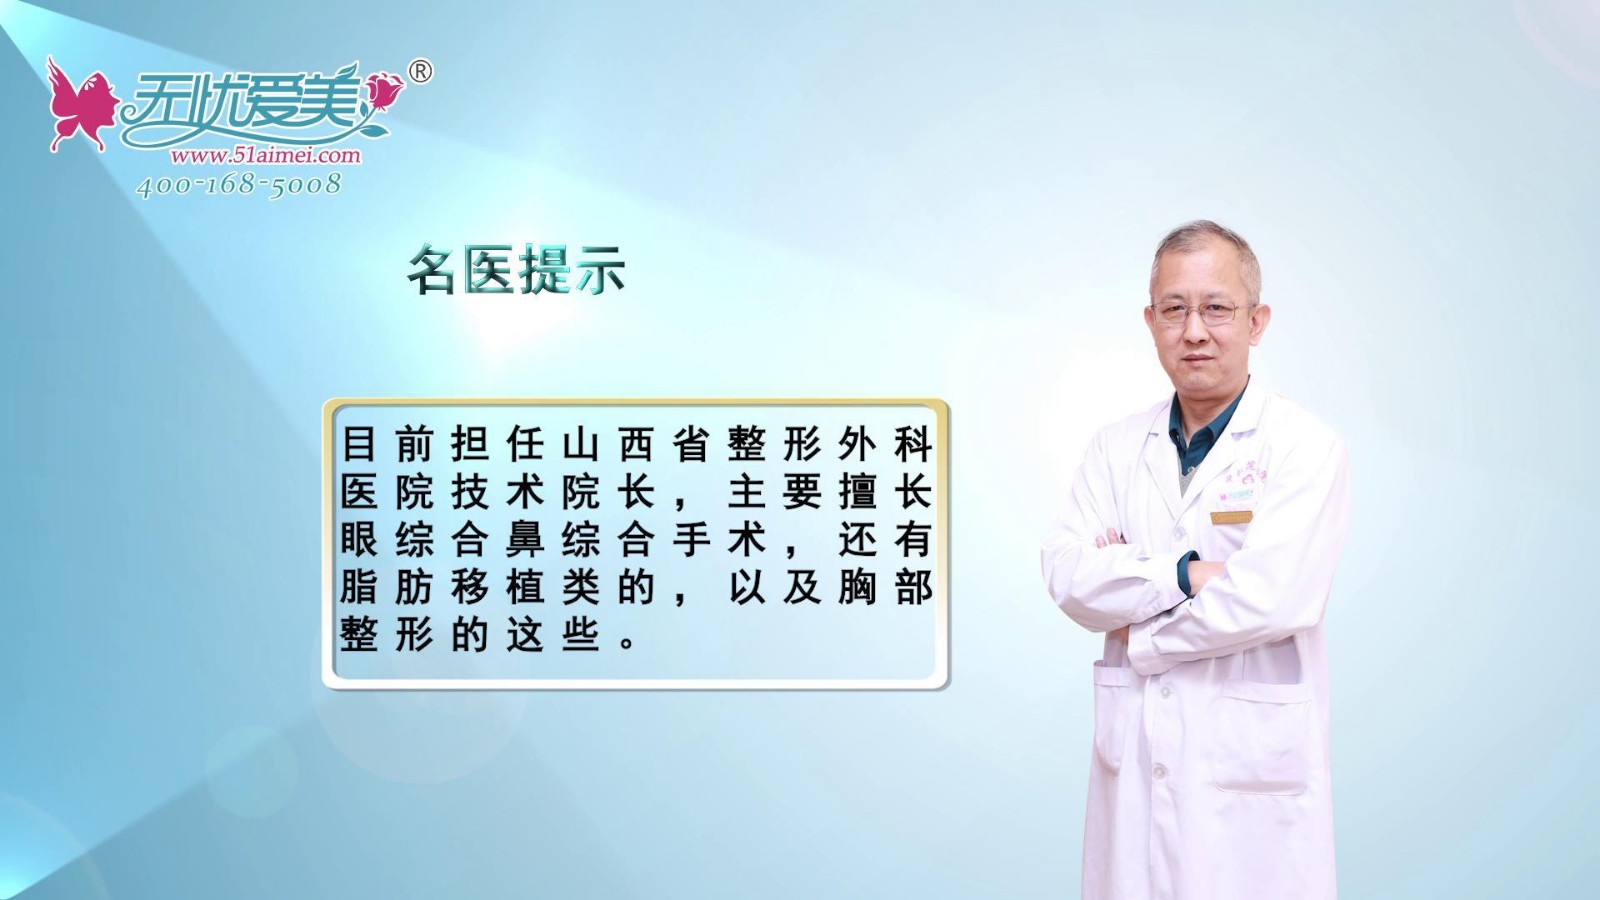 山西省整形外科医院刘晋元院长视频讲述其从业经历